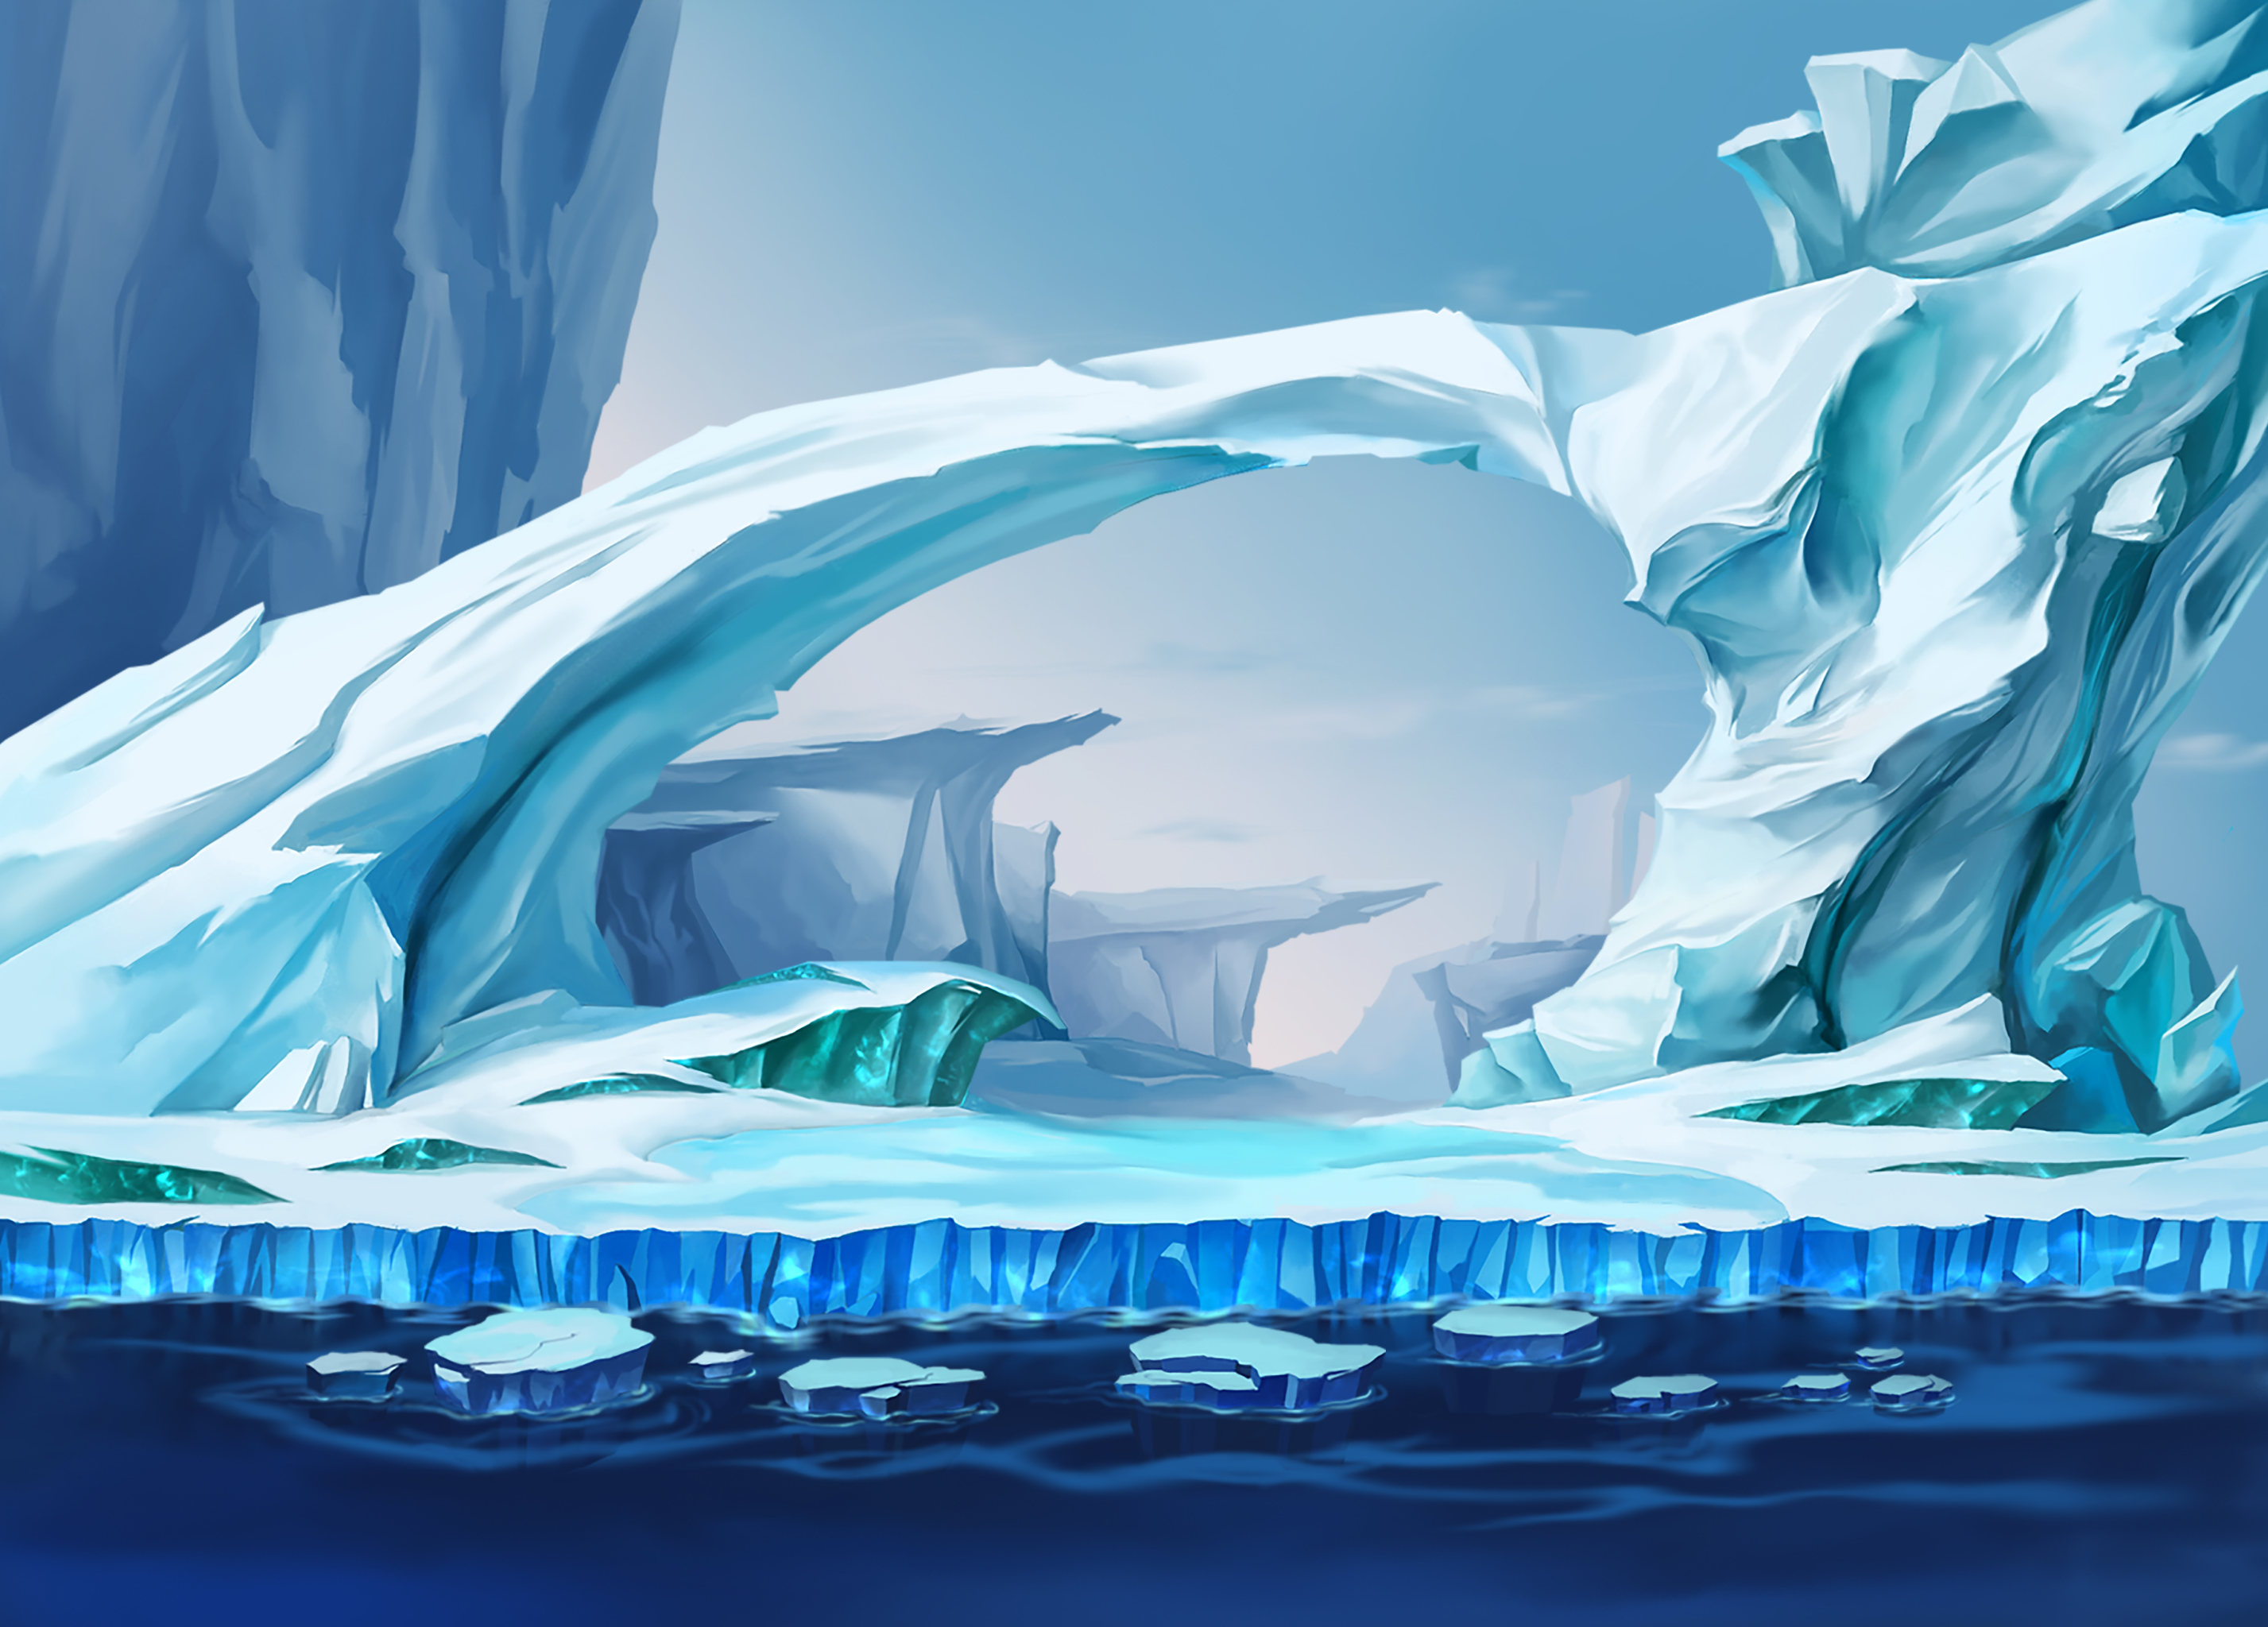 极地冰川场景插画背景素材